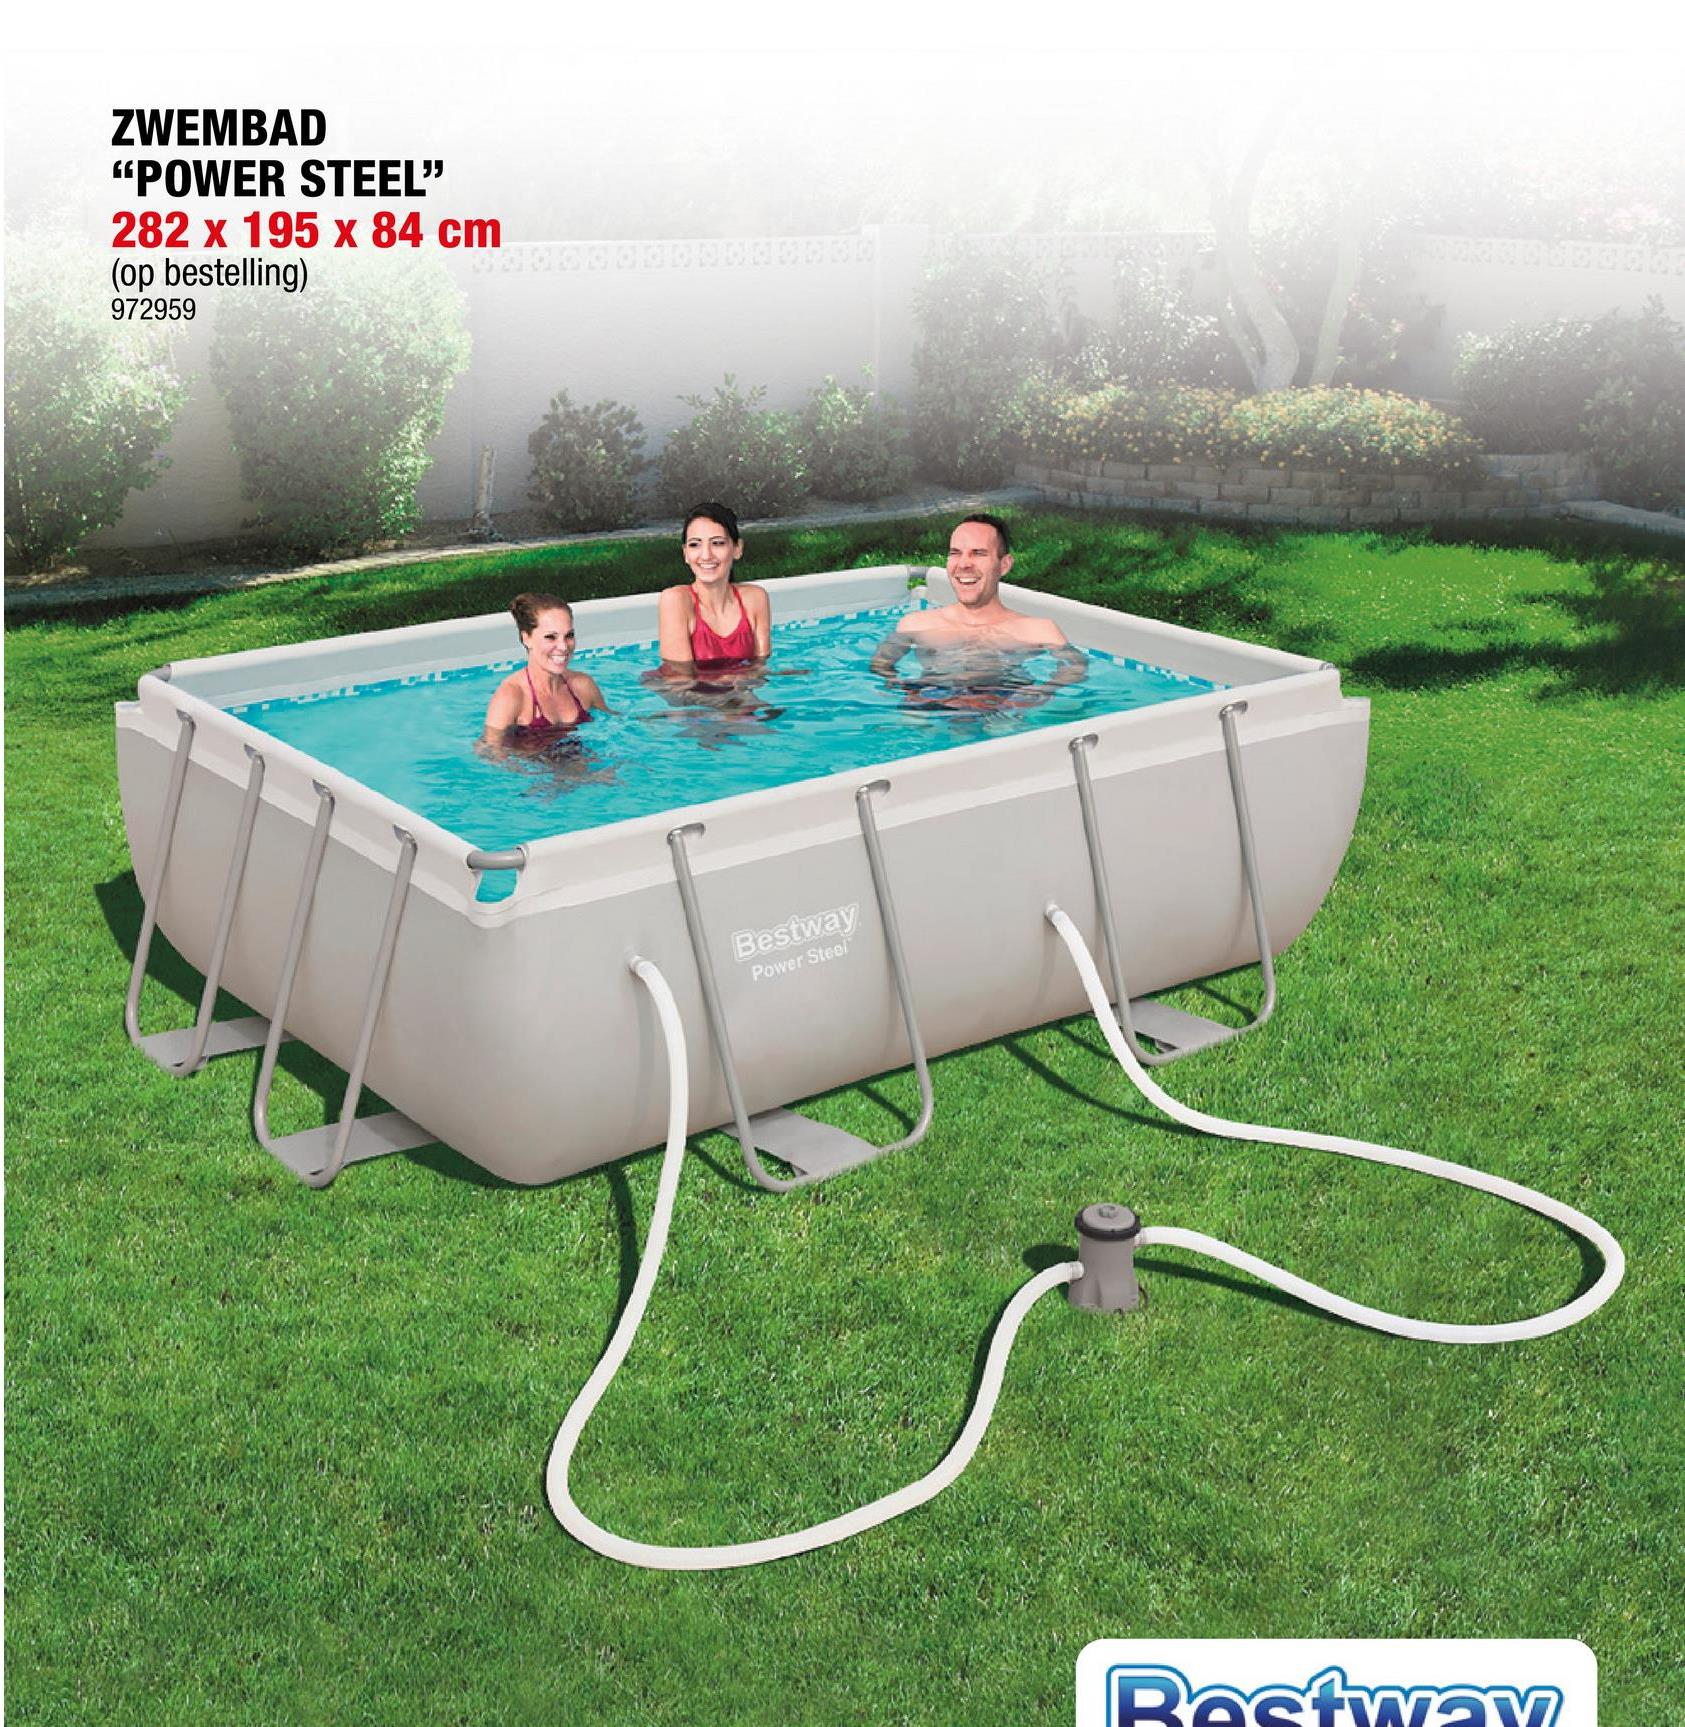 Bestway Power Steel zwembad 282x196x84 cm <p>Het Bestway Power Steel zwembad is perfect om samen met je familie te kunnen genieten van wat verkoeling tijdens de zomer. Het zwembad is uitgerust met een extra versterkt, corrosiebestendig stalen frame met het slimme Seal &ampLock systeem, met onderaan een 3-laags PVC band ter extra ondersteuning. </p><p>Het zwembad is zeer gemakkelijk te installeren. De installatie duurt meestal ongeveer 20 minuten met 3 personen, exclusief grondwerken en opvullen.</p>Duurzaam Tritech materiaal UV- en chloorbestendig Watercapaciteit 90%: 3662l Moza&iuml;ek print Sterkere frame met U-vormige poten Gemiddeld 1x per 2 weken cartridge vervangenEN16582-1, EN16582-3, EN16713-1, EN16713-2 en EN16713-3 Europese standaarden Chemconnect Dispenser voor een stabiel chloorgehalte en een goede chemische balans Cartridgefilterpomp 1,2 m³;/u 220-240 V: cartridge type I